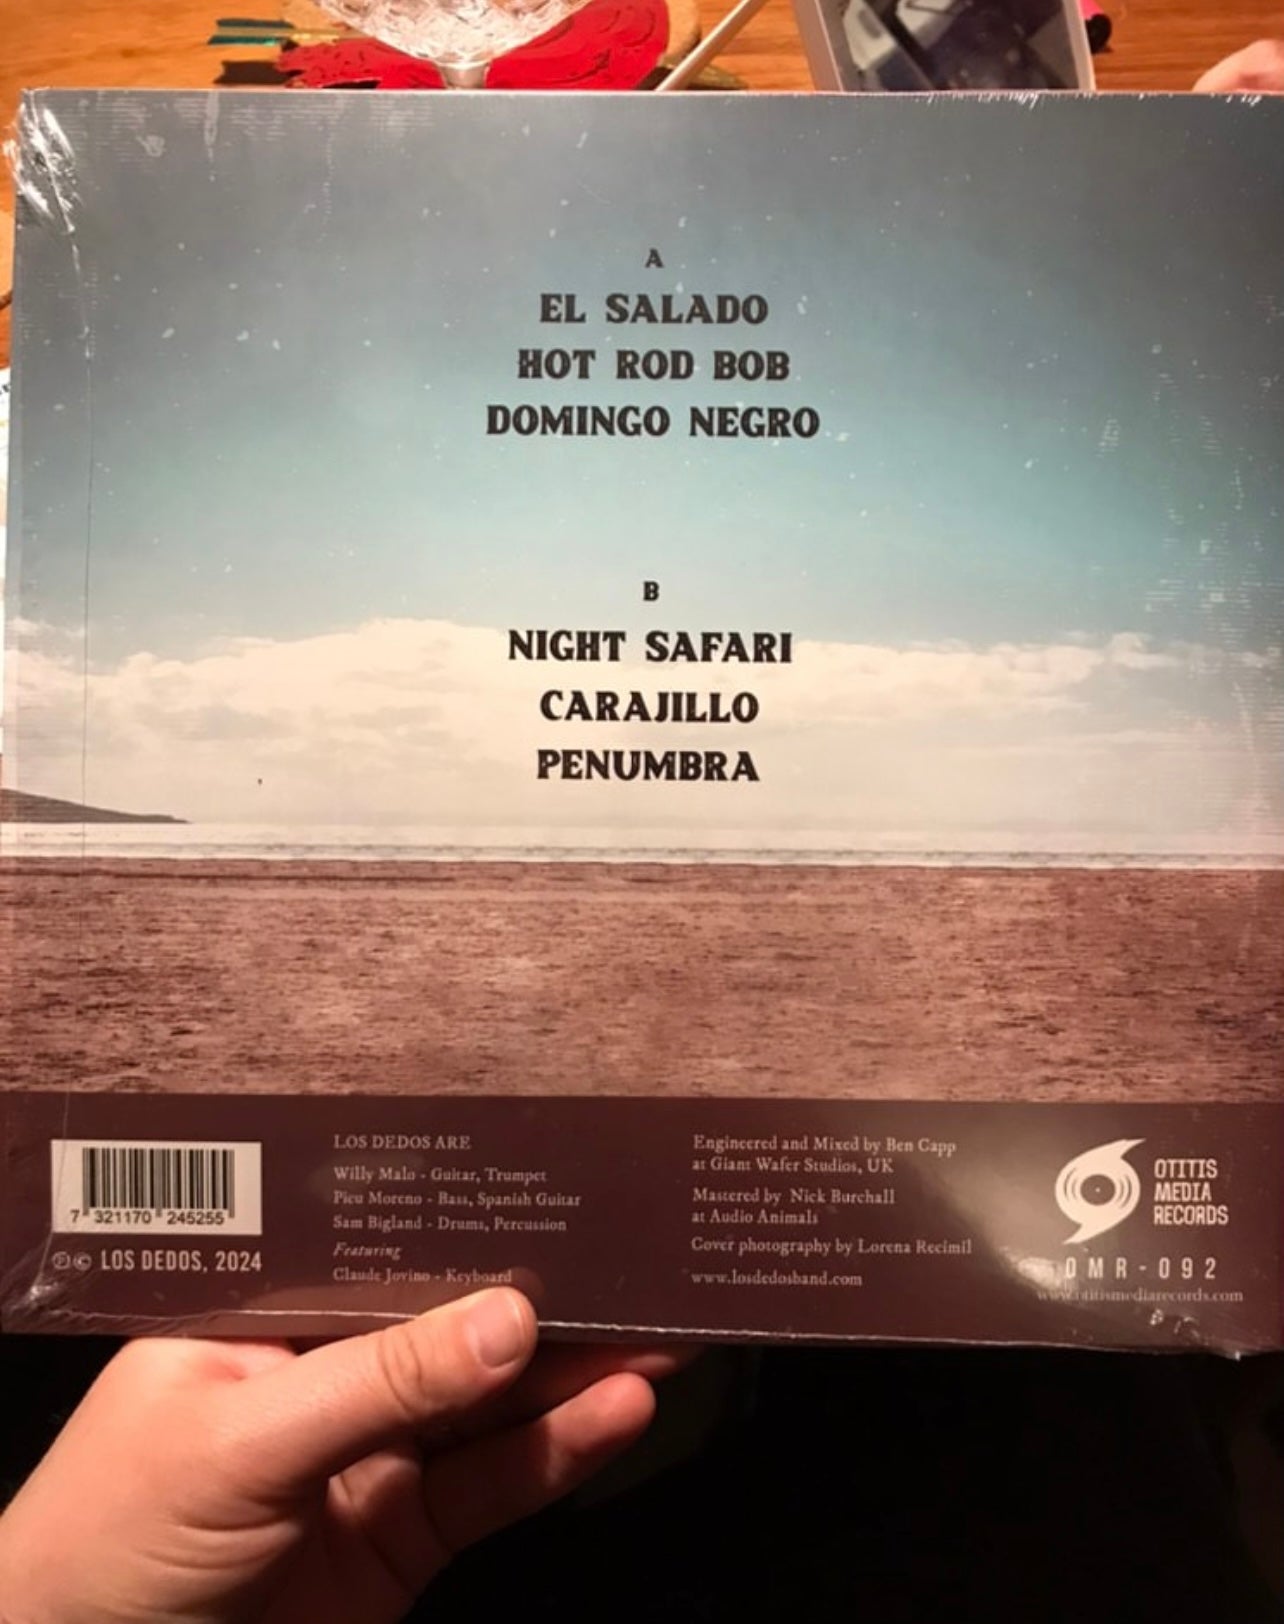 OMR-092 LOS DEDOS “El Salado” 10 inch Vinyl EP (Pre-Order!)